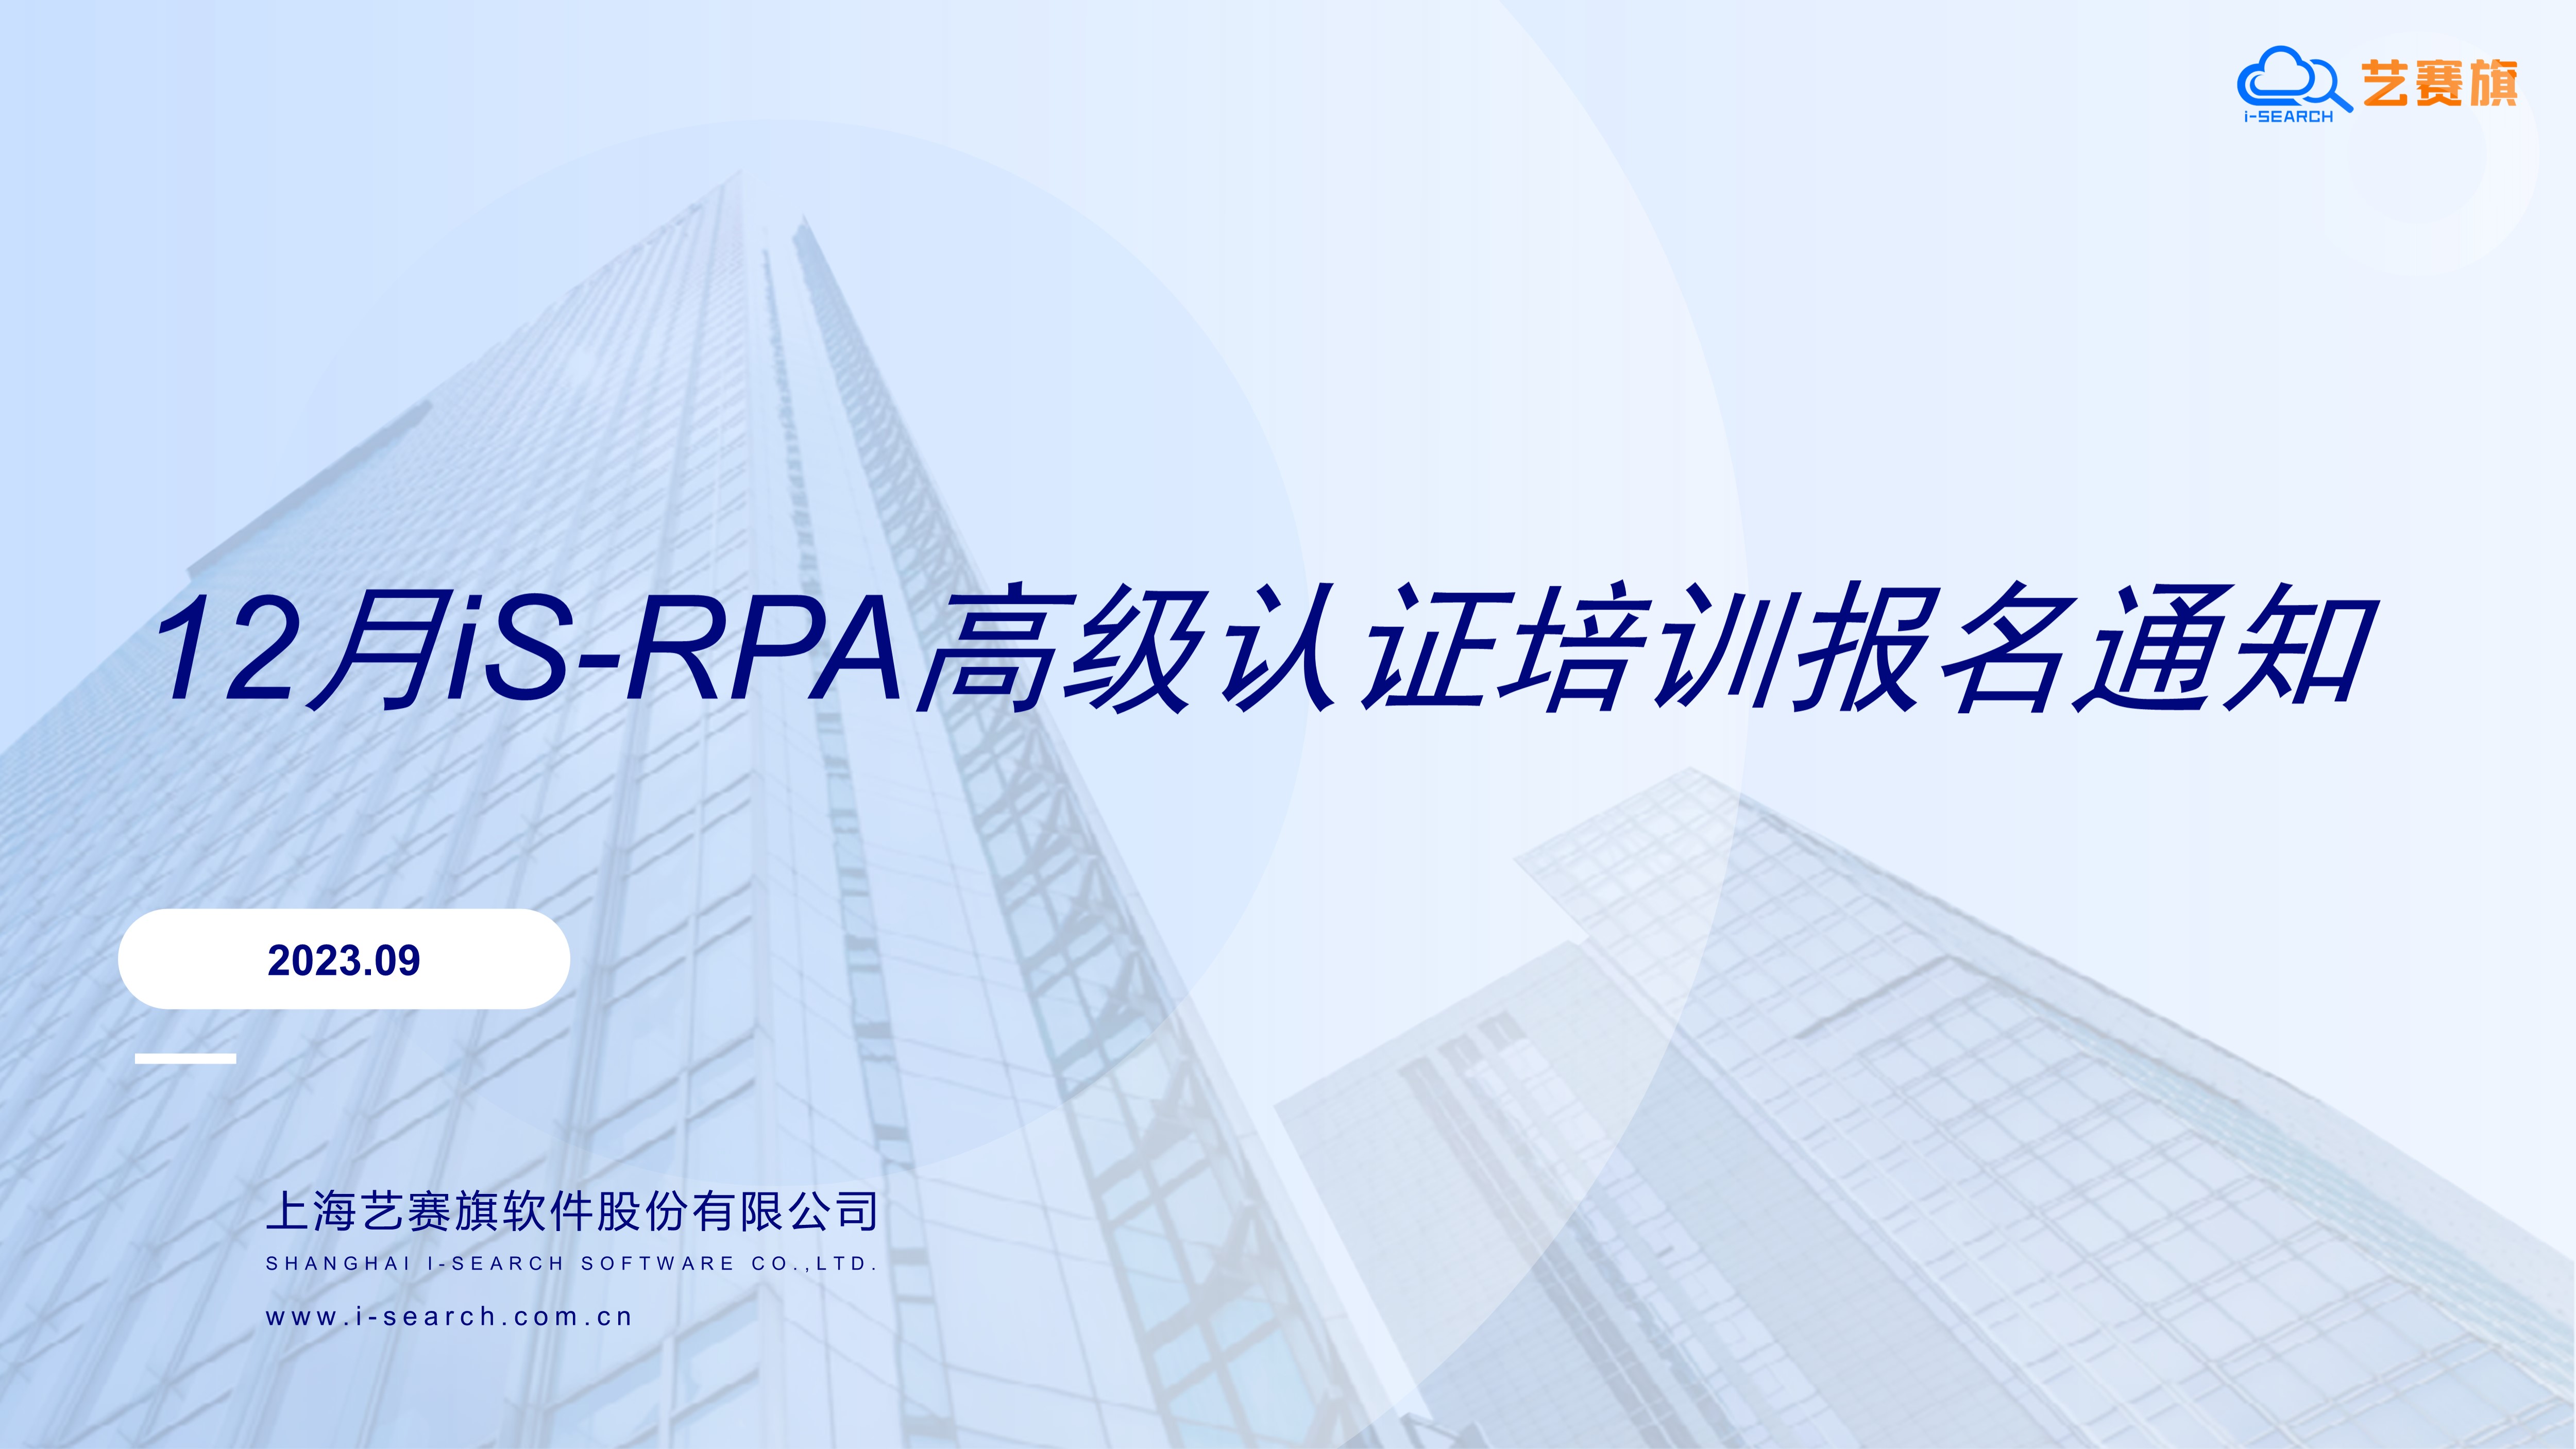 2023 年 12 月 iS-RPA 高级认证培训报名通知（12.07 截至报名，本年度最后一场）